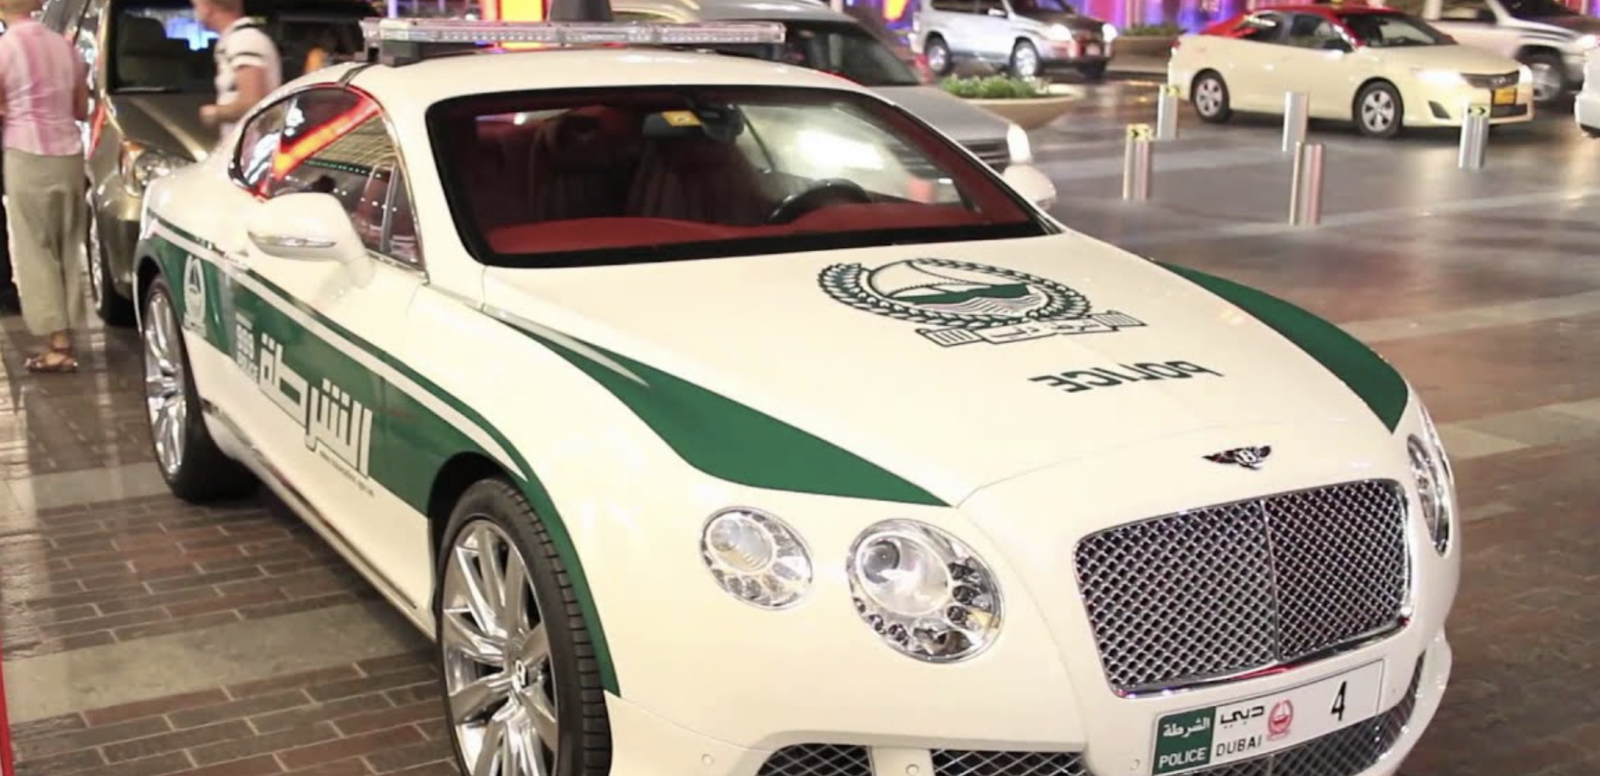 Bentley continental gt dubai police car